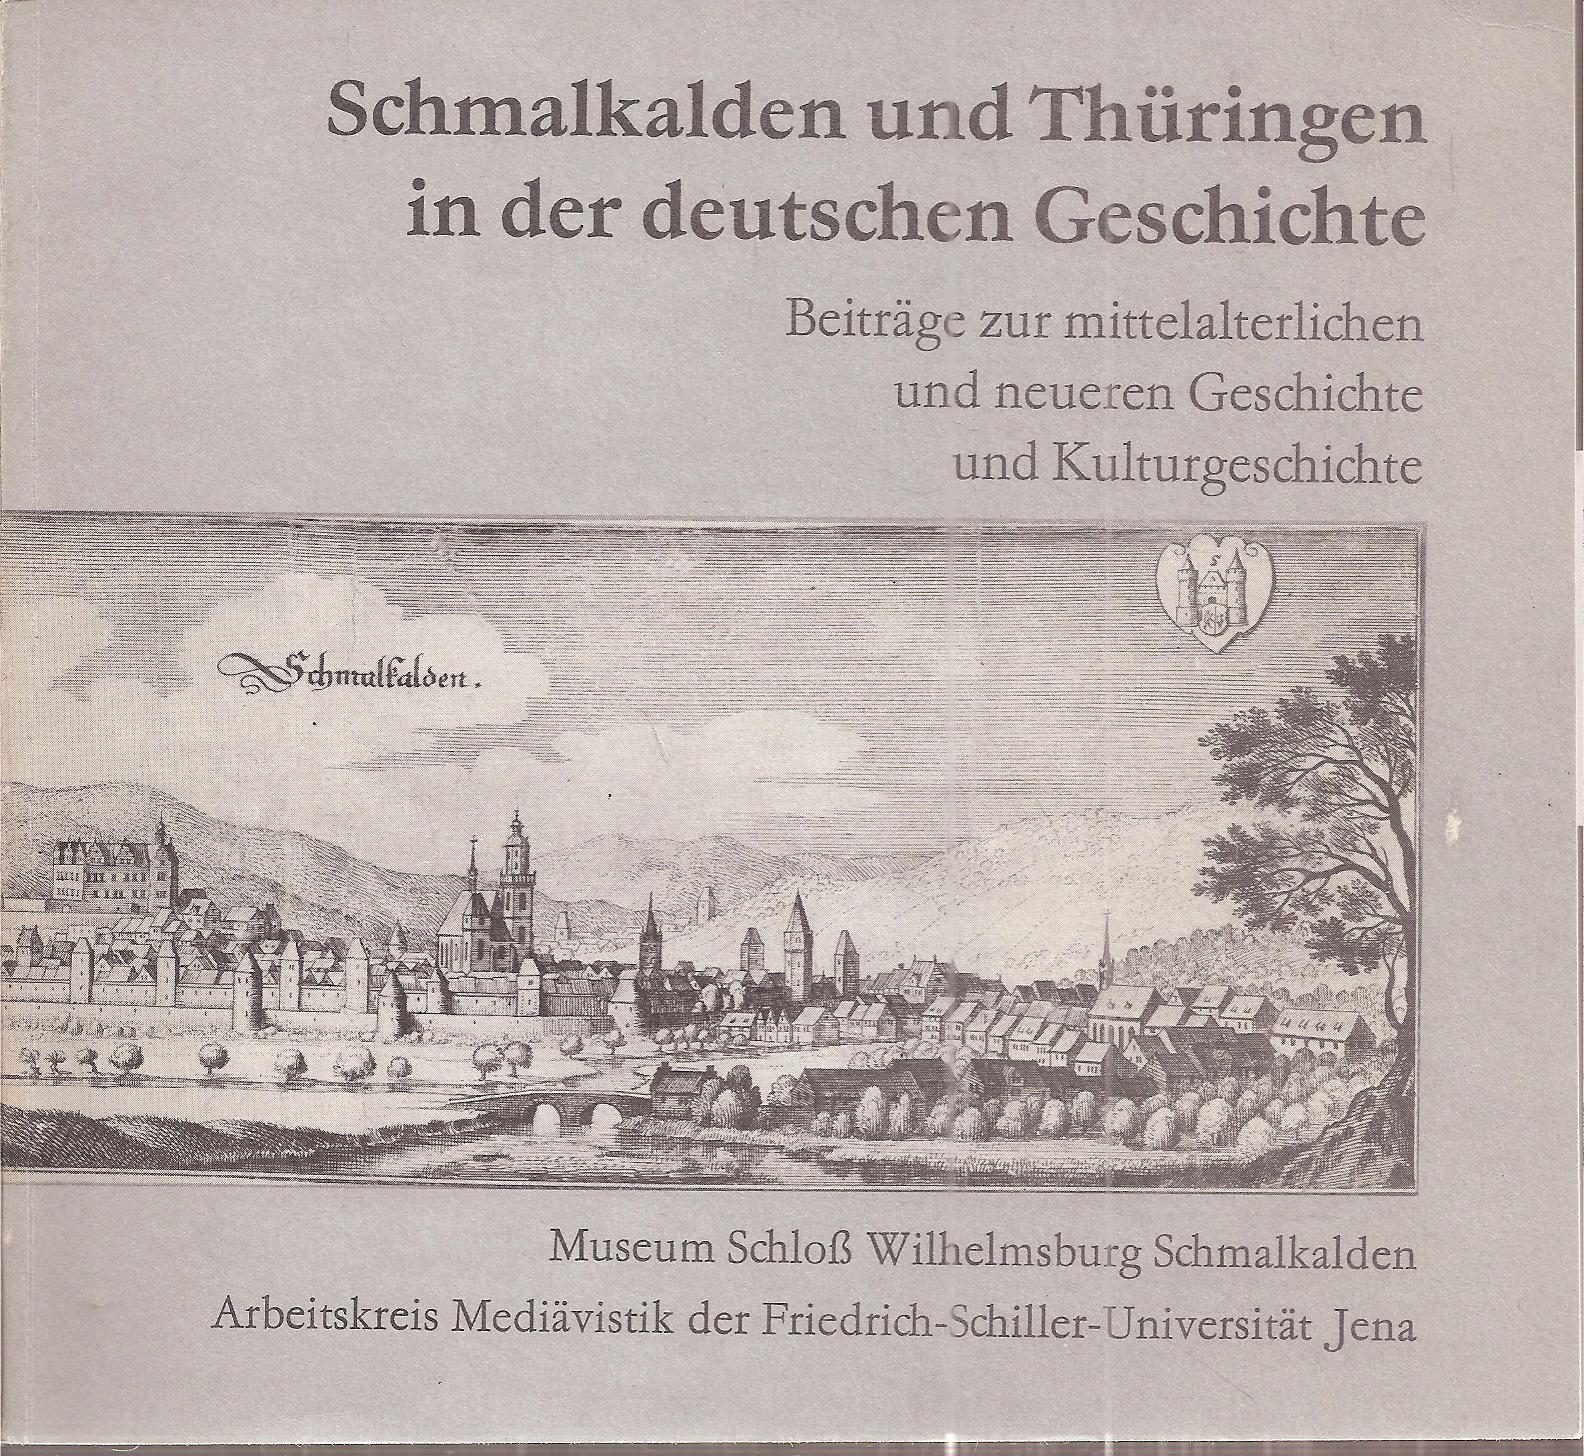 Museum Schloß Wilhelmsburg Schmalkalden  Schmalkalden und Thüringen in der deutschen Geschichte 